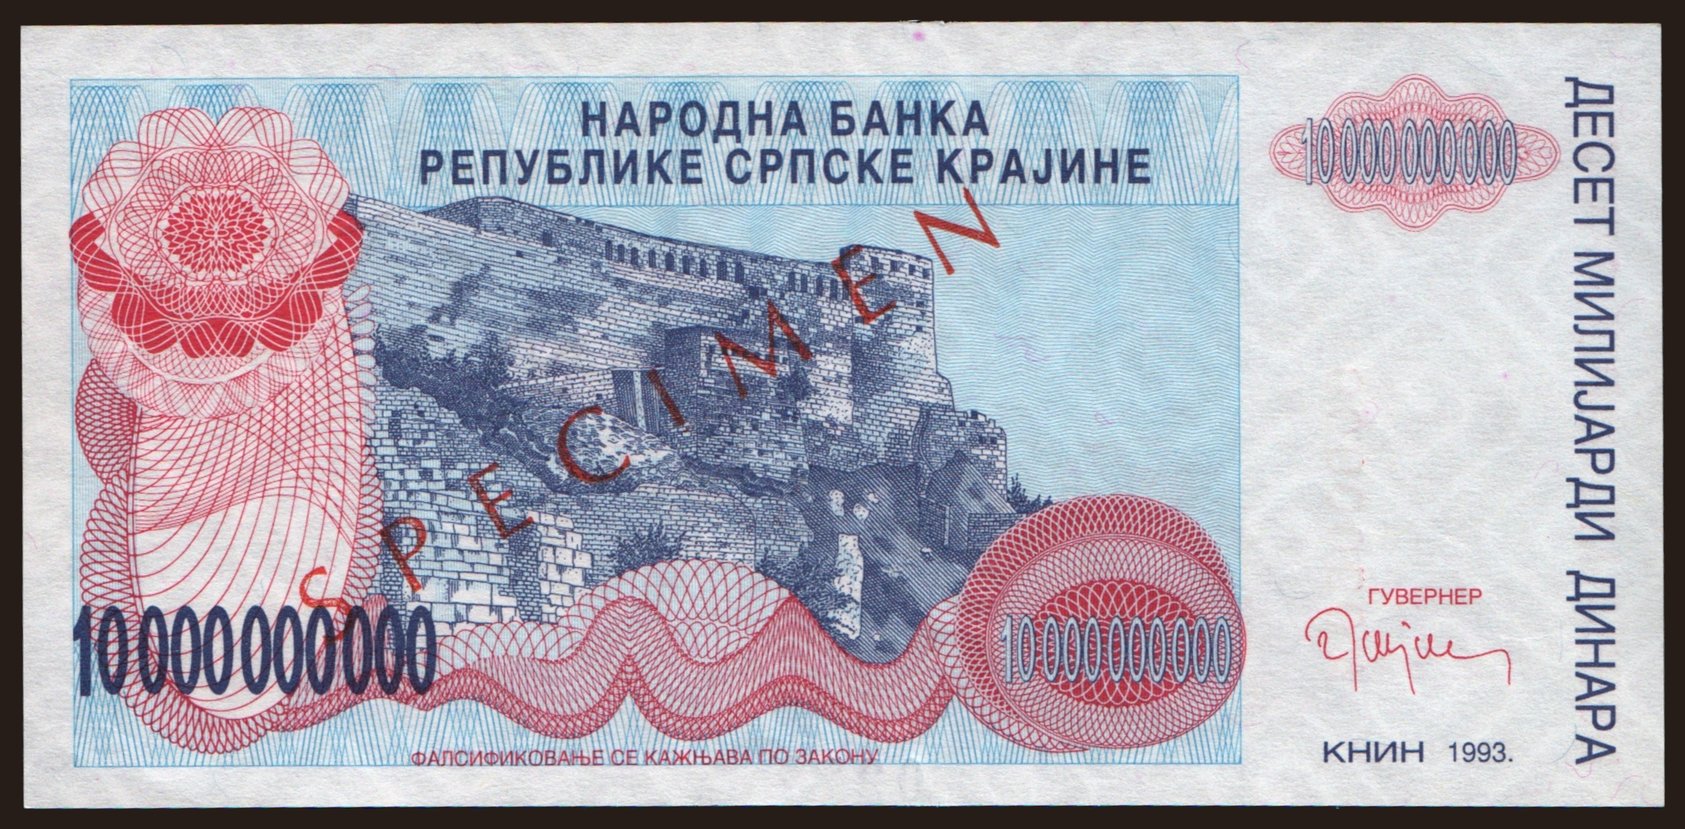 RSK, 10.000.000.000 dinara, 1993, SPECIMEN